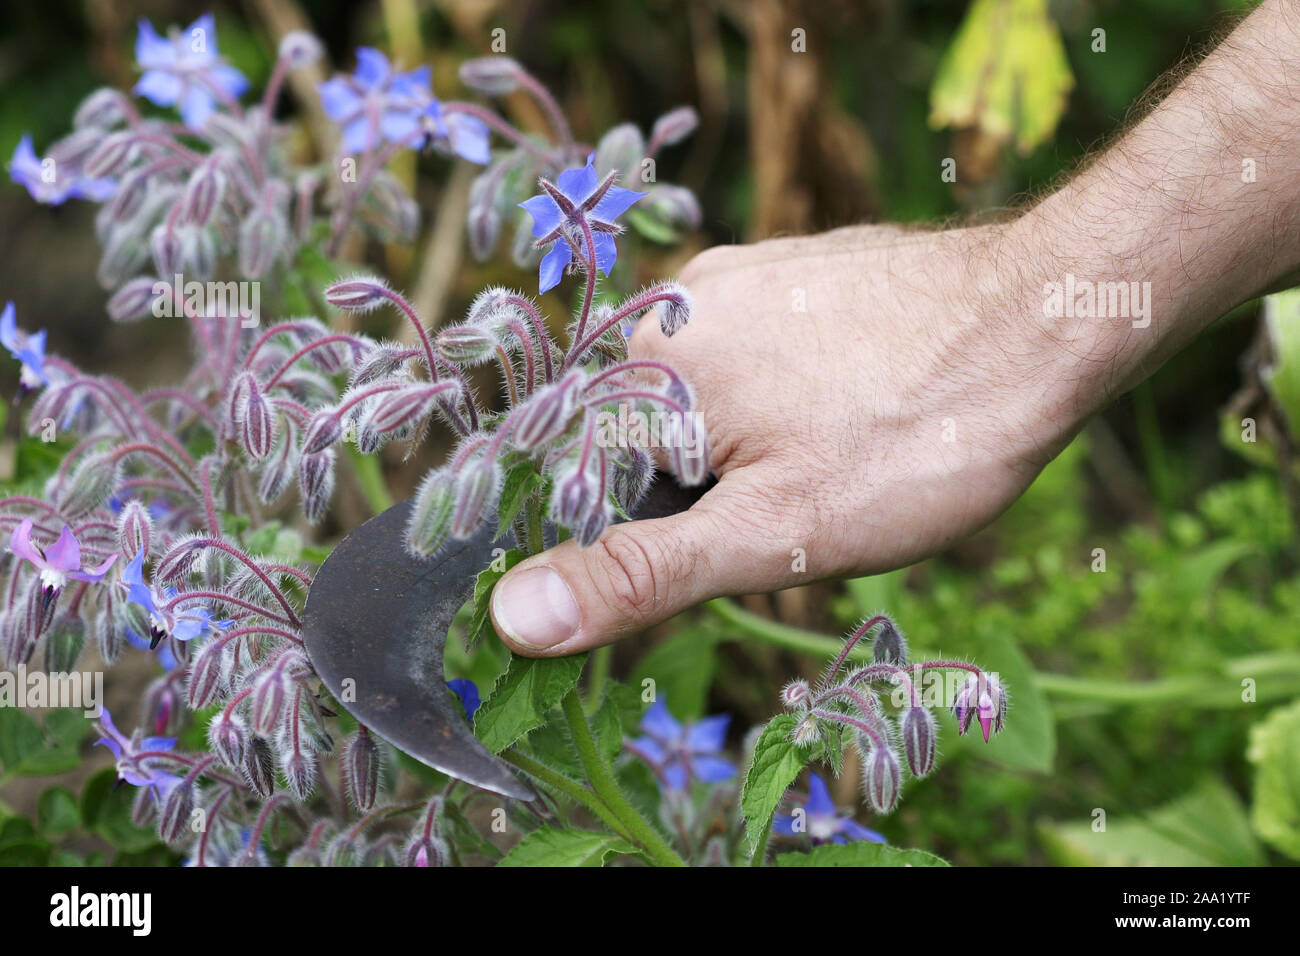 Eine Gärtnerhand Boretschblüten schneidet mit geschwungenen Hippe/ein Gärtner Hand schneiden Borretsch Blüten mit einem spezial Gärtner Messer Stockfoto